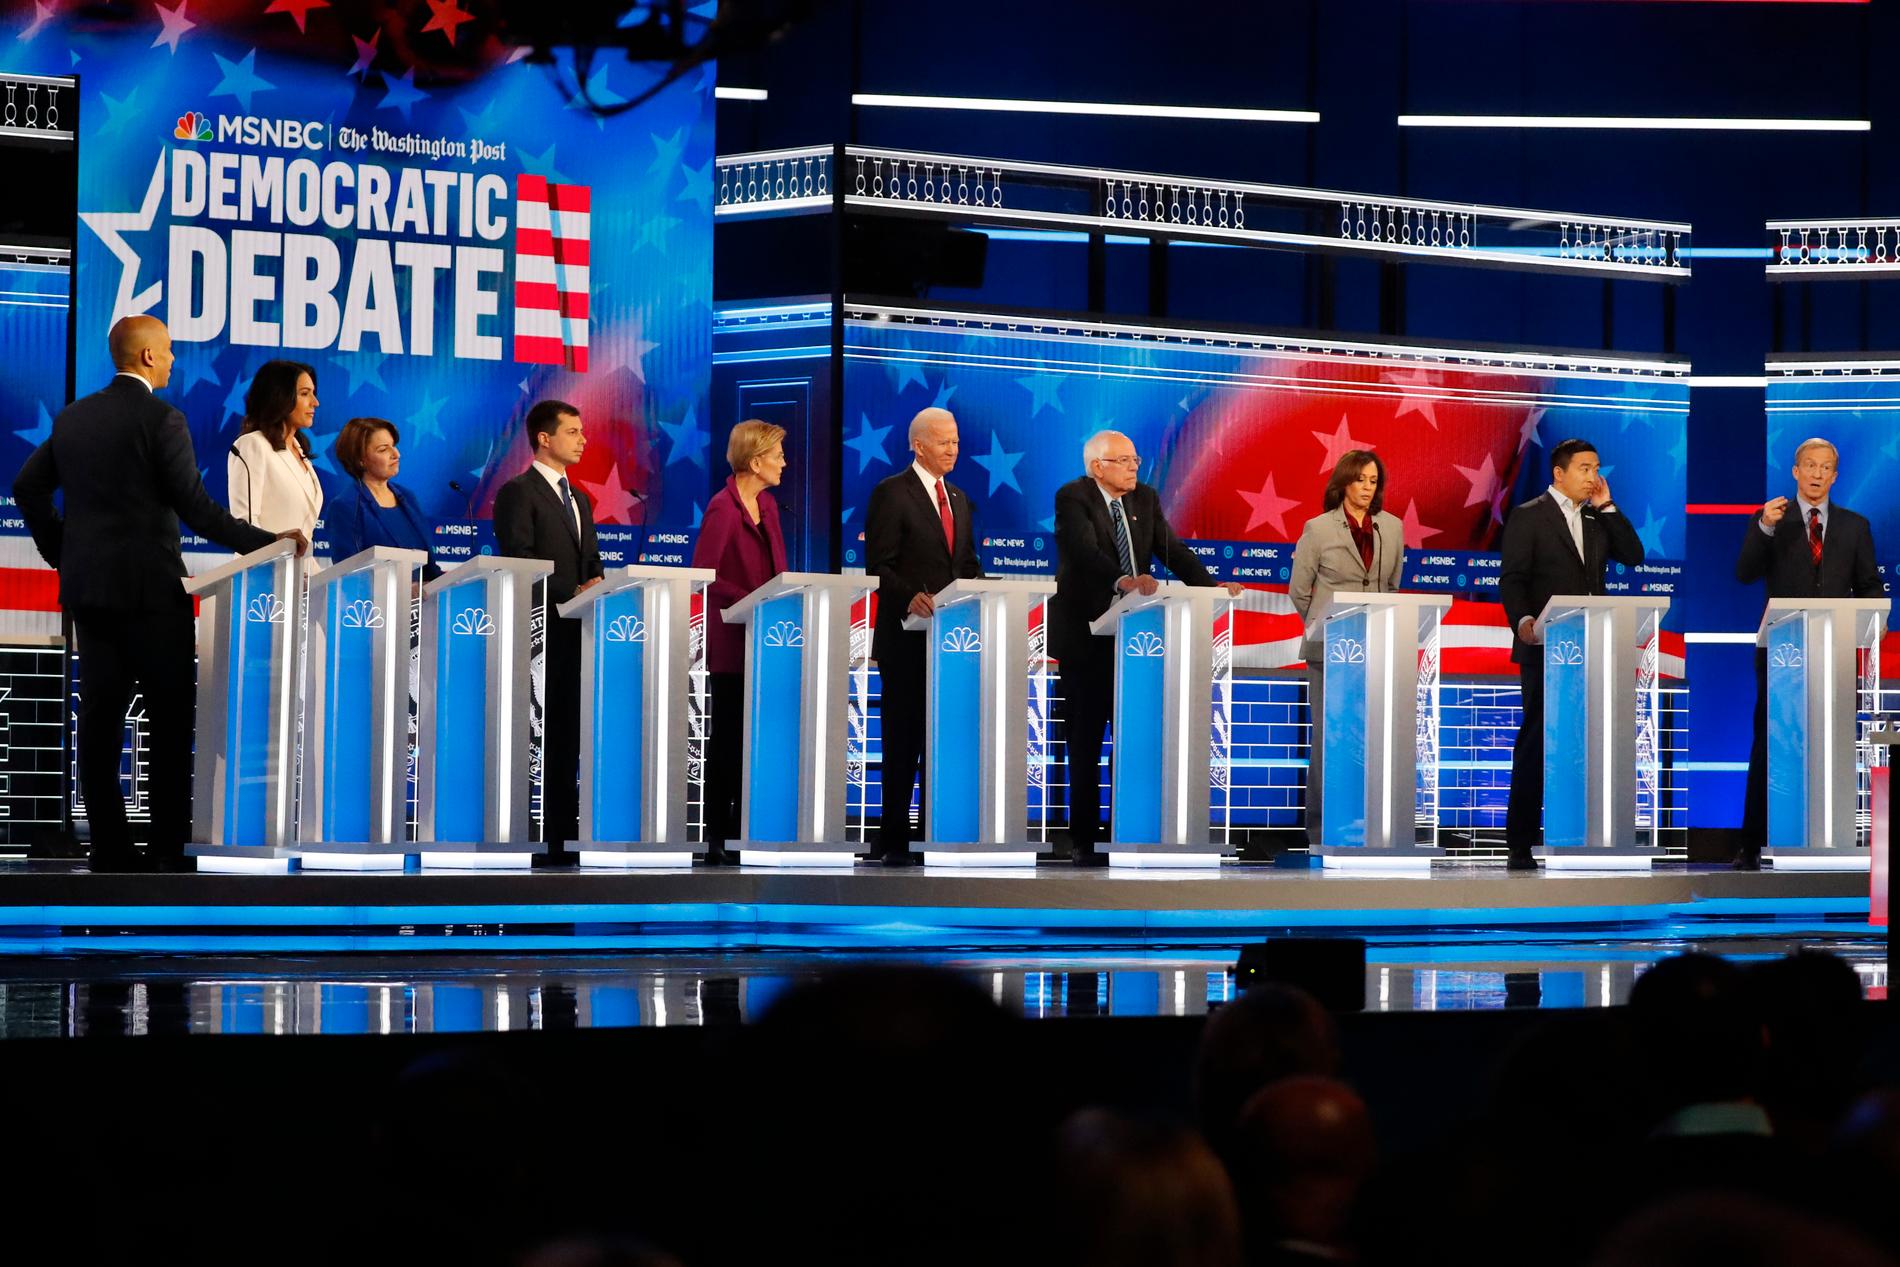 Tio presidentaspiranter från Demokraterna deltog i den senaste debatten. Från vänster: Cory Booker, Tulsi Gabbard, Amy Klobuchar, Pete Buttigieg, Elizabeth Warren, Joe Biden, Bernie Sanders, Kamala Harris, Andrew Yang och Tom Steyer.